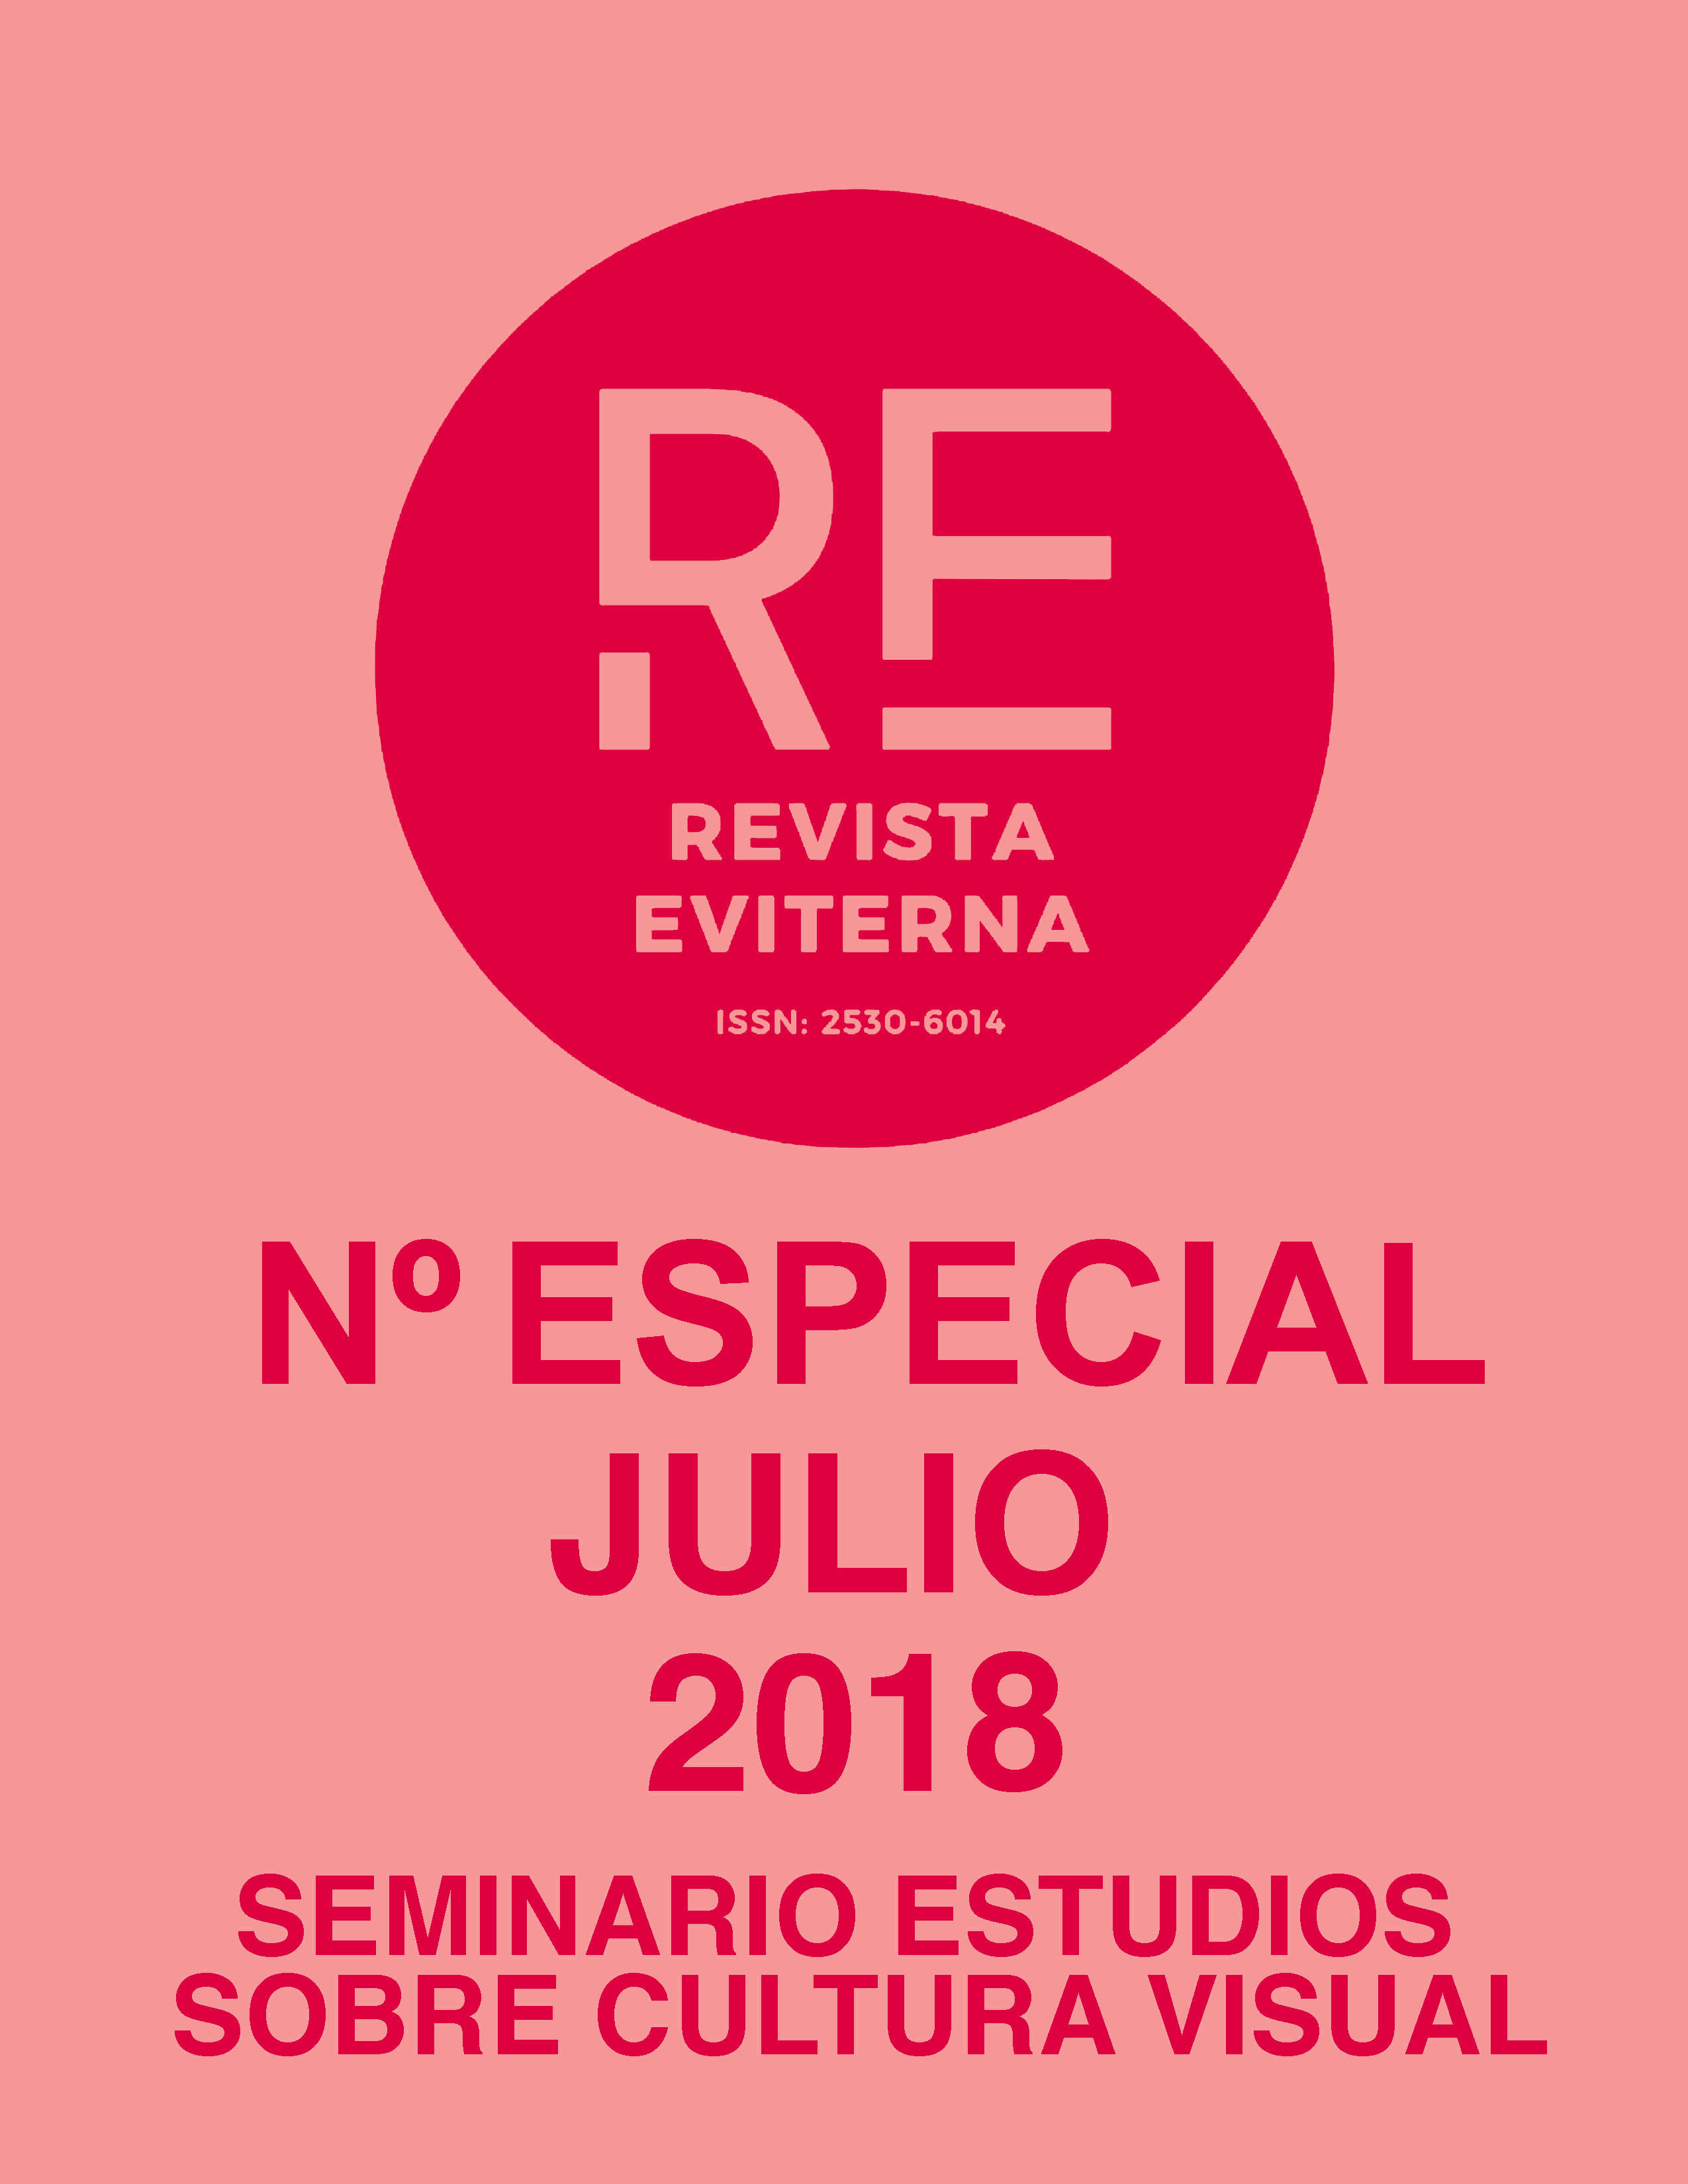 					Ver Núm. Especial 3 (2018): Revista Eviterna Nº Especial 3, julio 2018
				